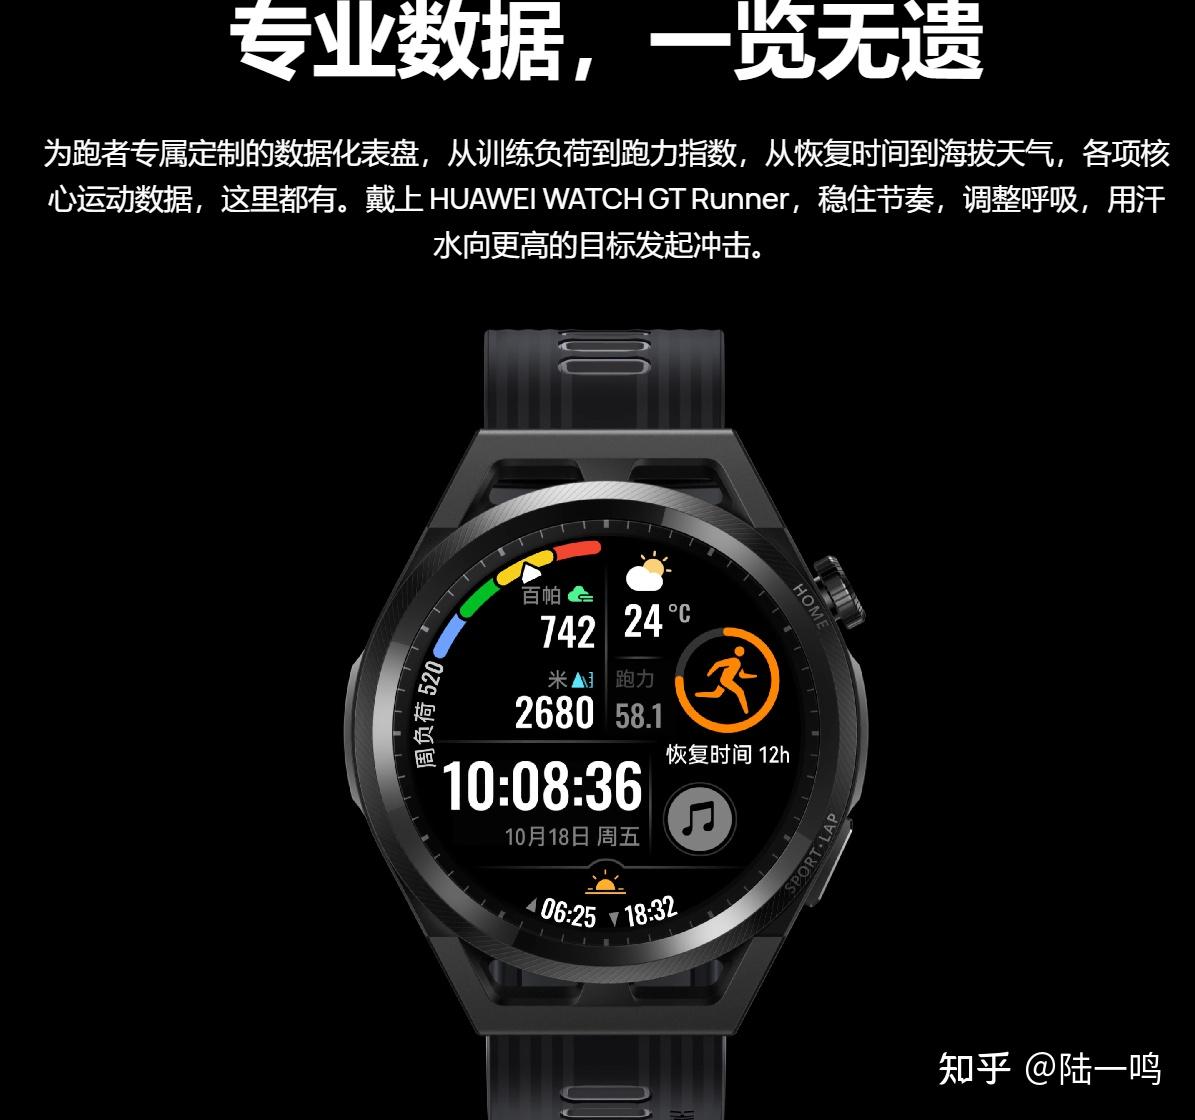 如何评价华为首款专业跑步手表watchgtrunner值得购买吗